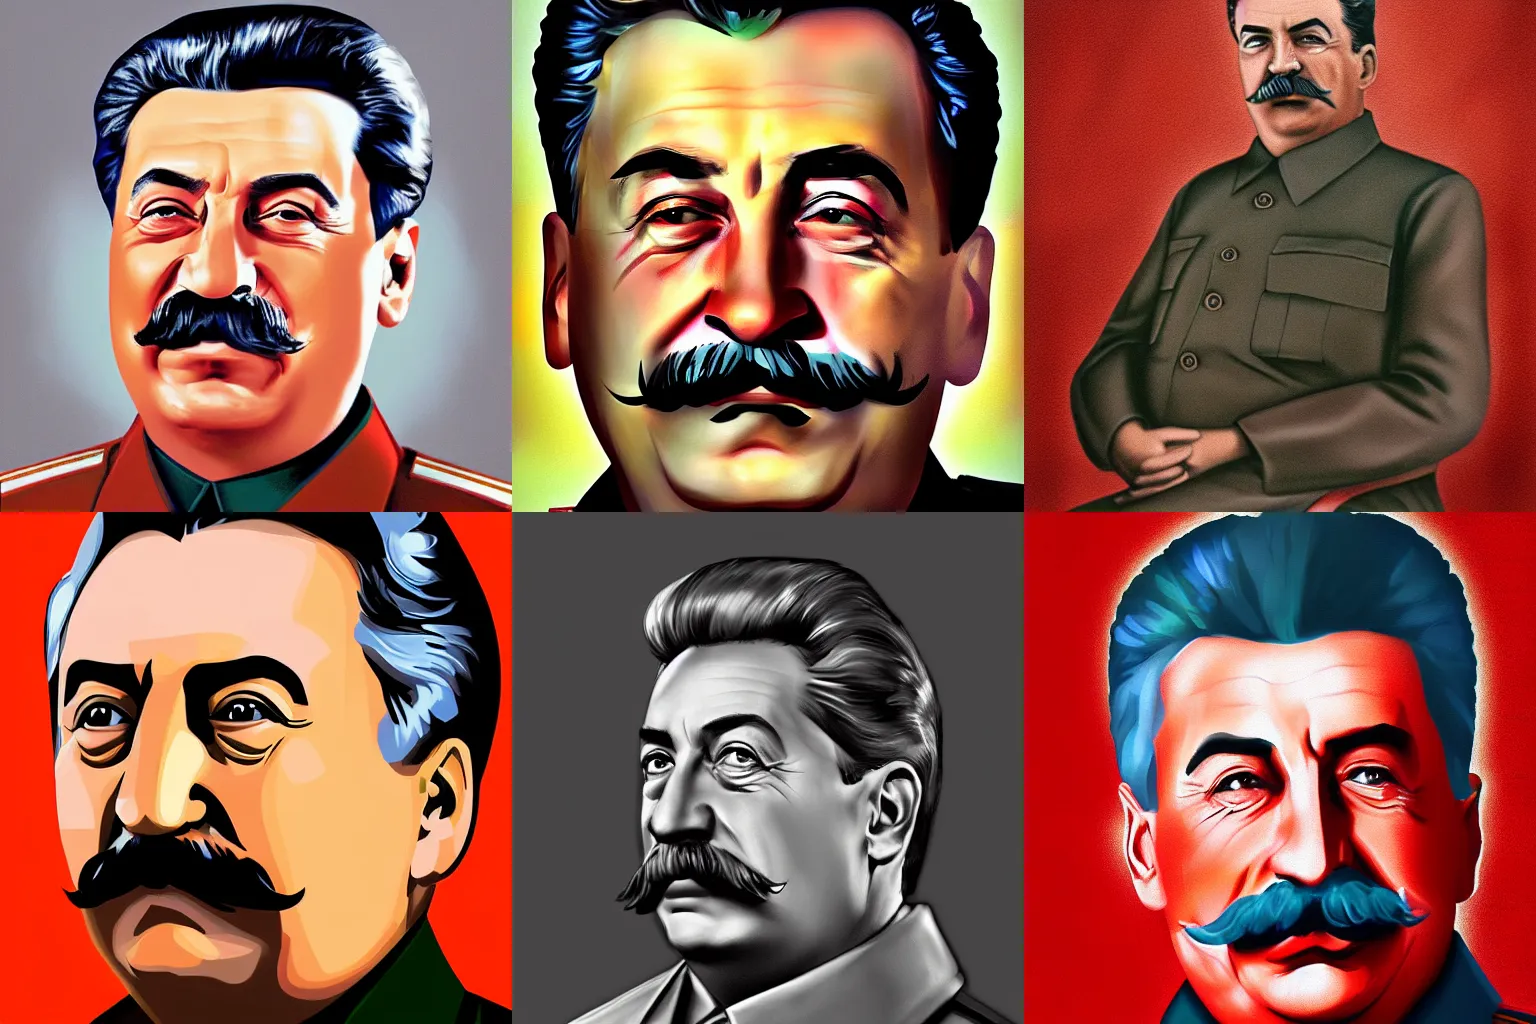 Prompt: stalin, portrait, digital paint, hyper realistic